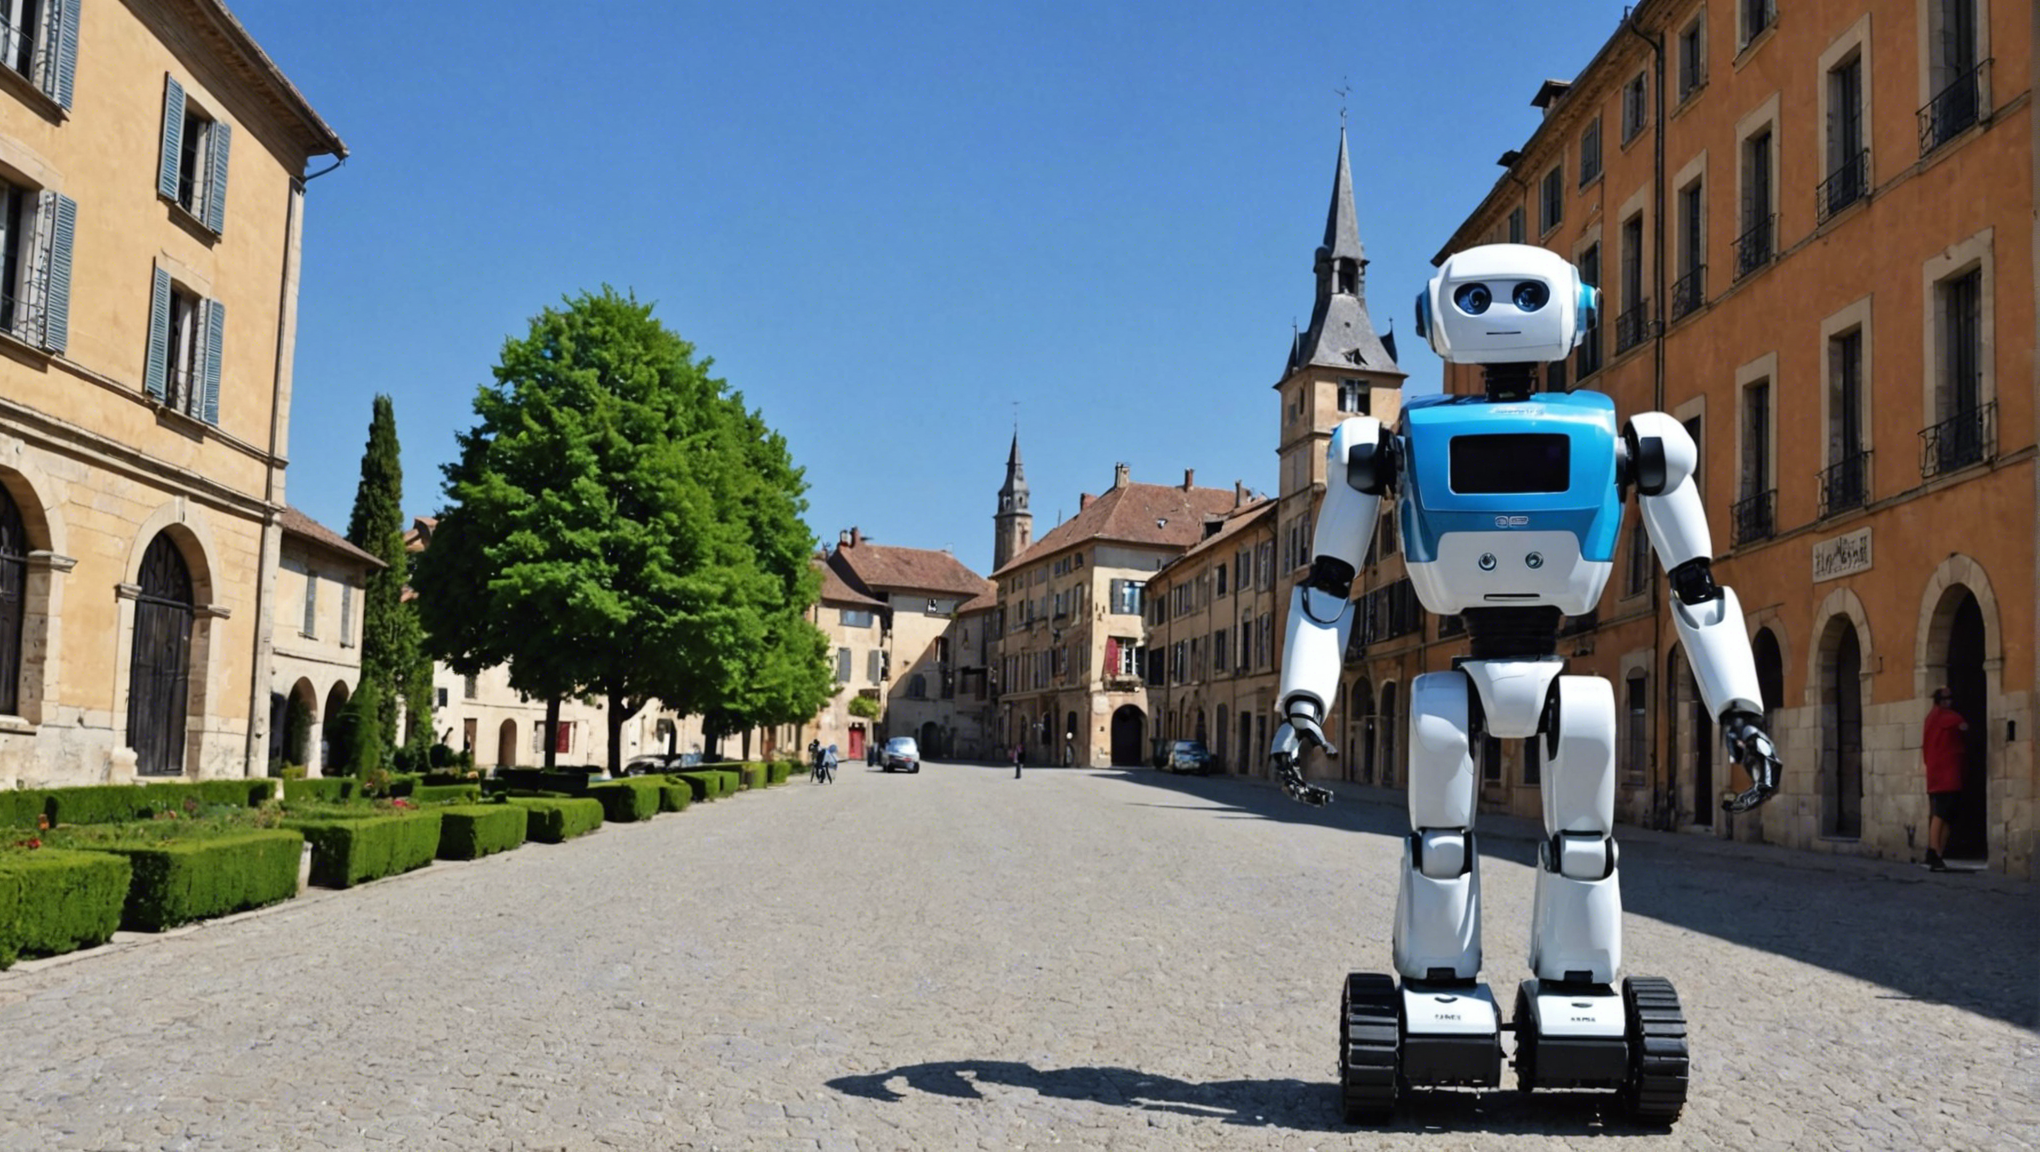 découvrez où louer un robot en haute-garonne (31) avec une large sélection de choix pour tous vos besoins : événements, entreprises, particuliers.